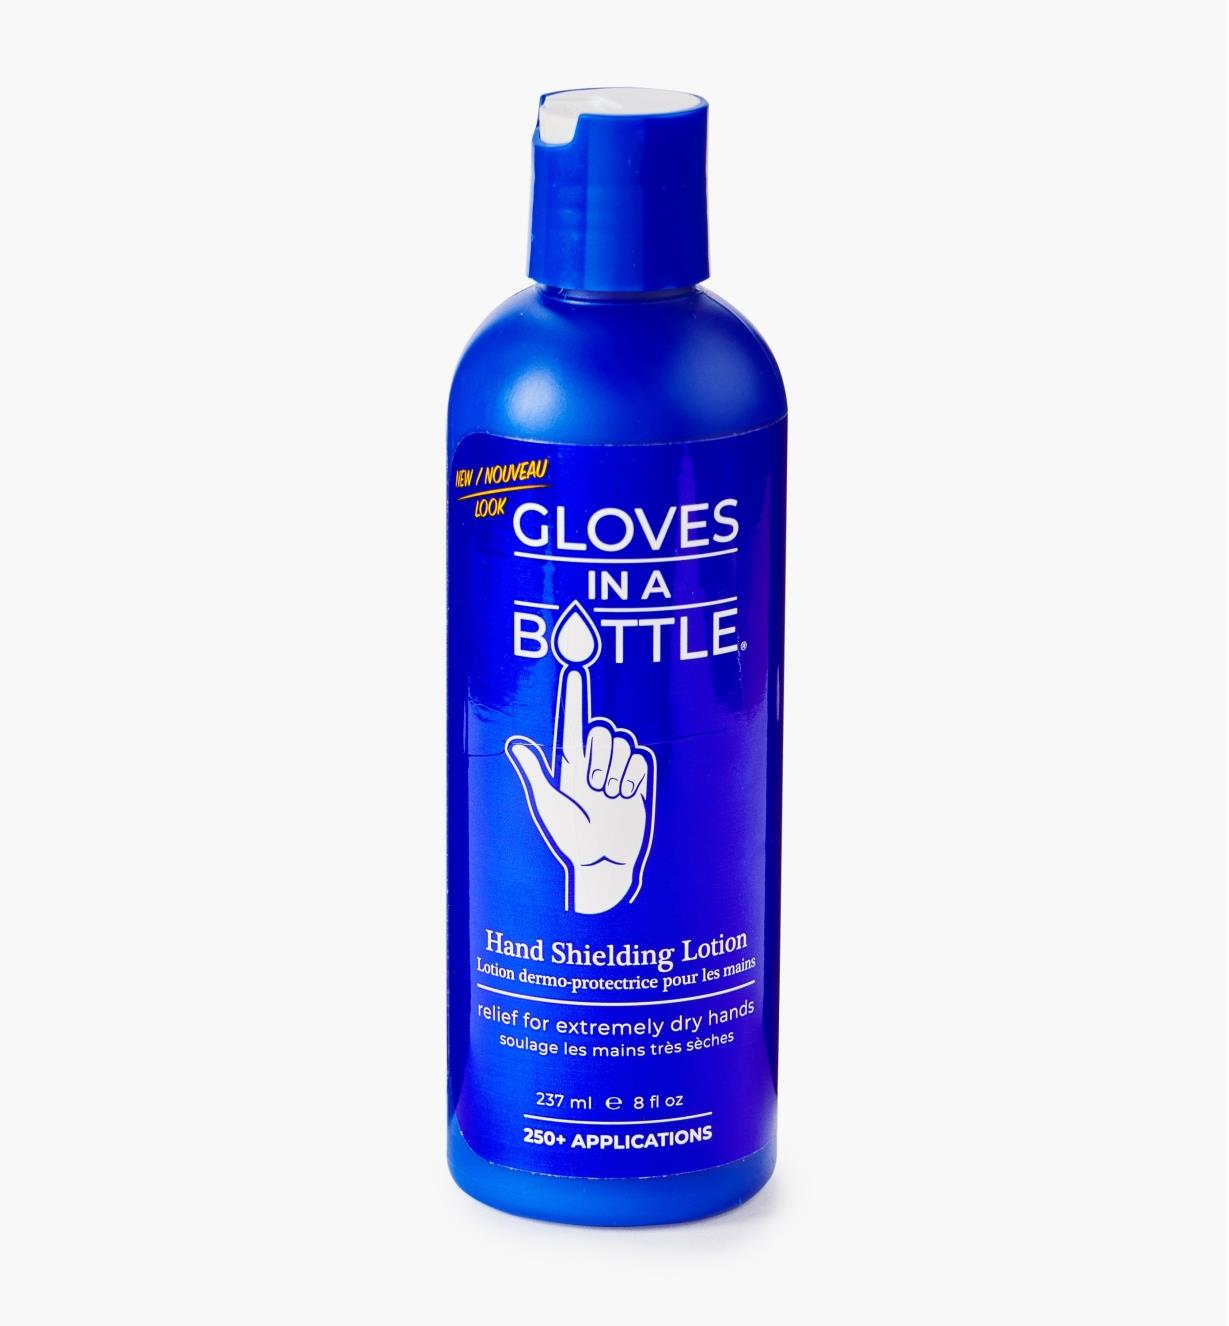 25K9022 - Gants invisibles Gloves in a Bottle, 237 ml (8 oz liq.)